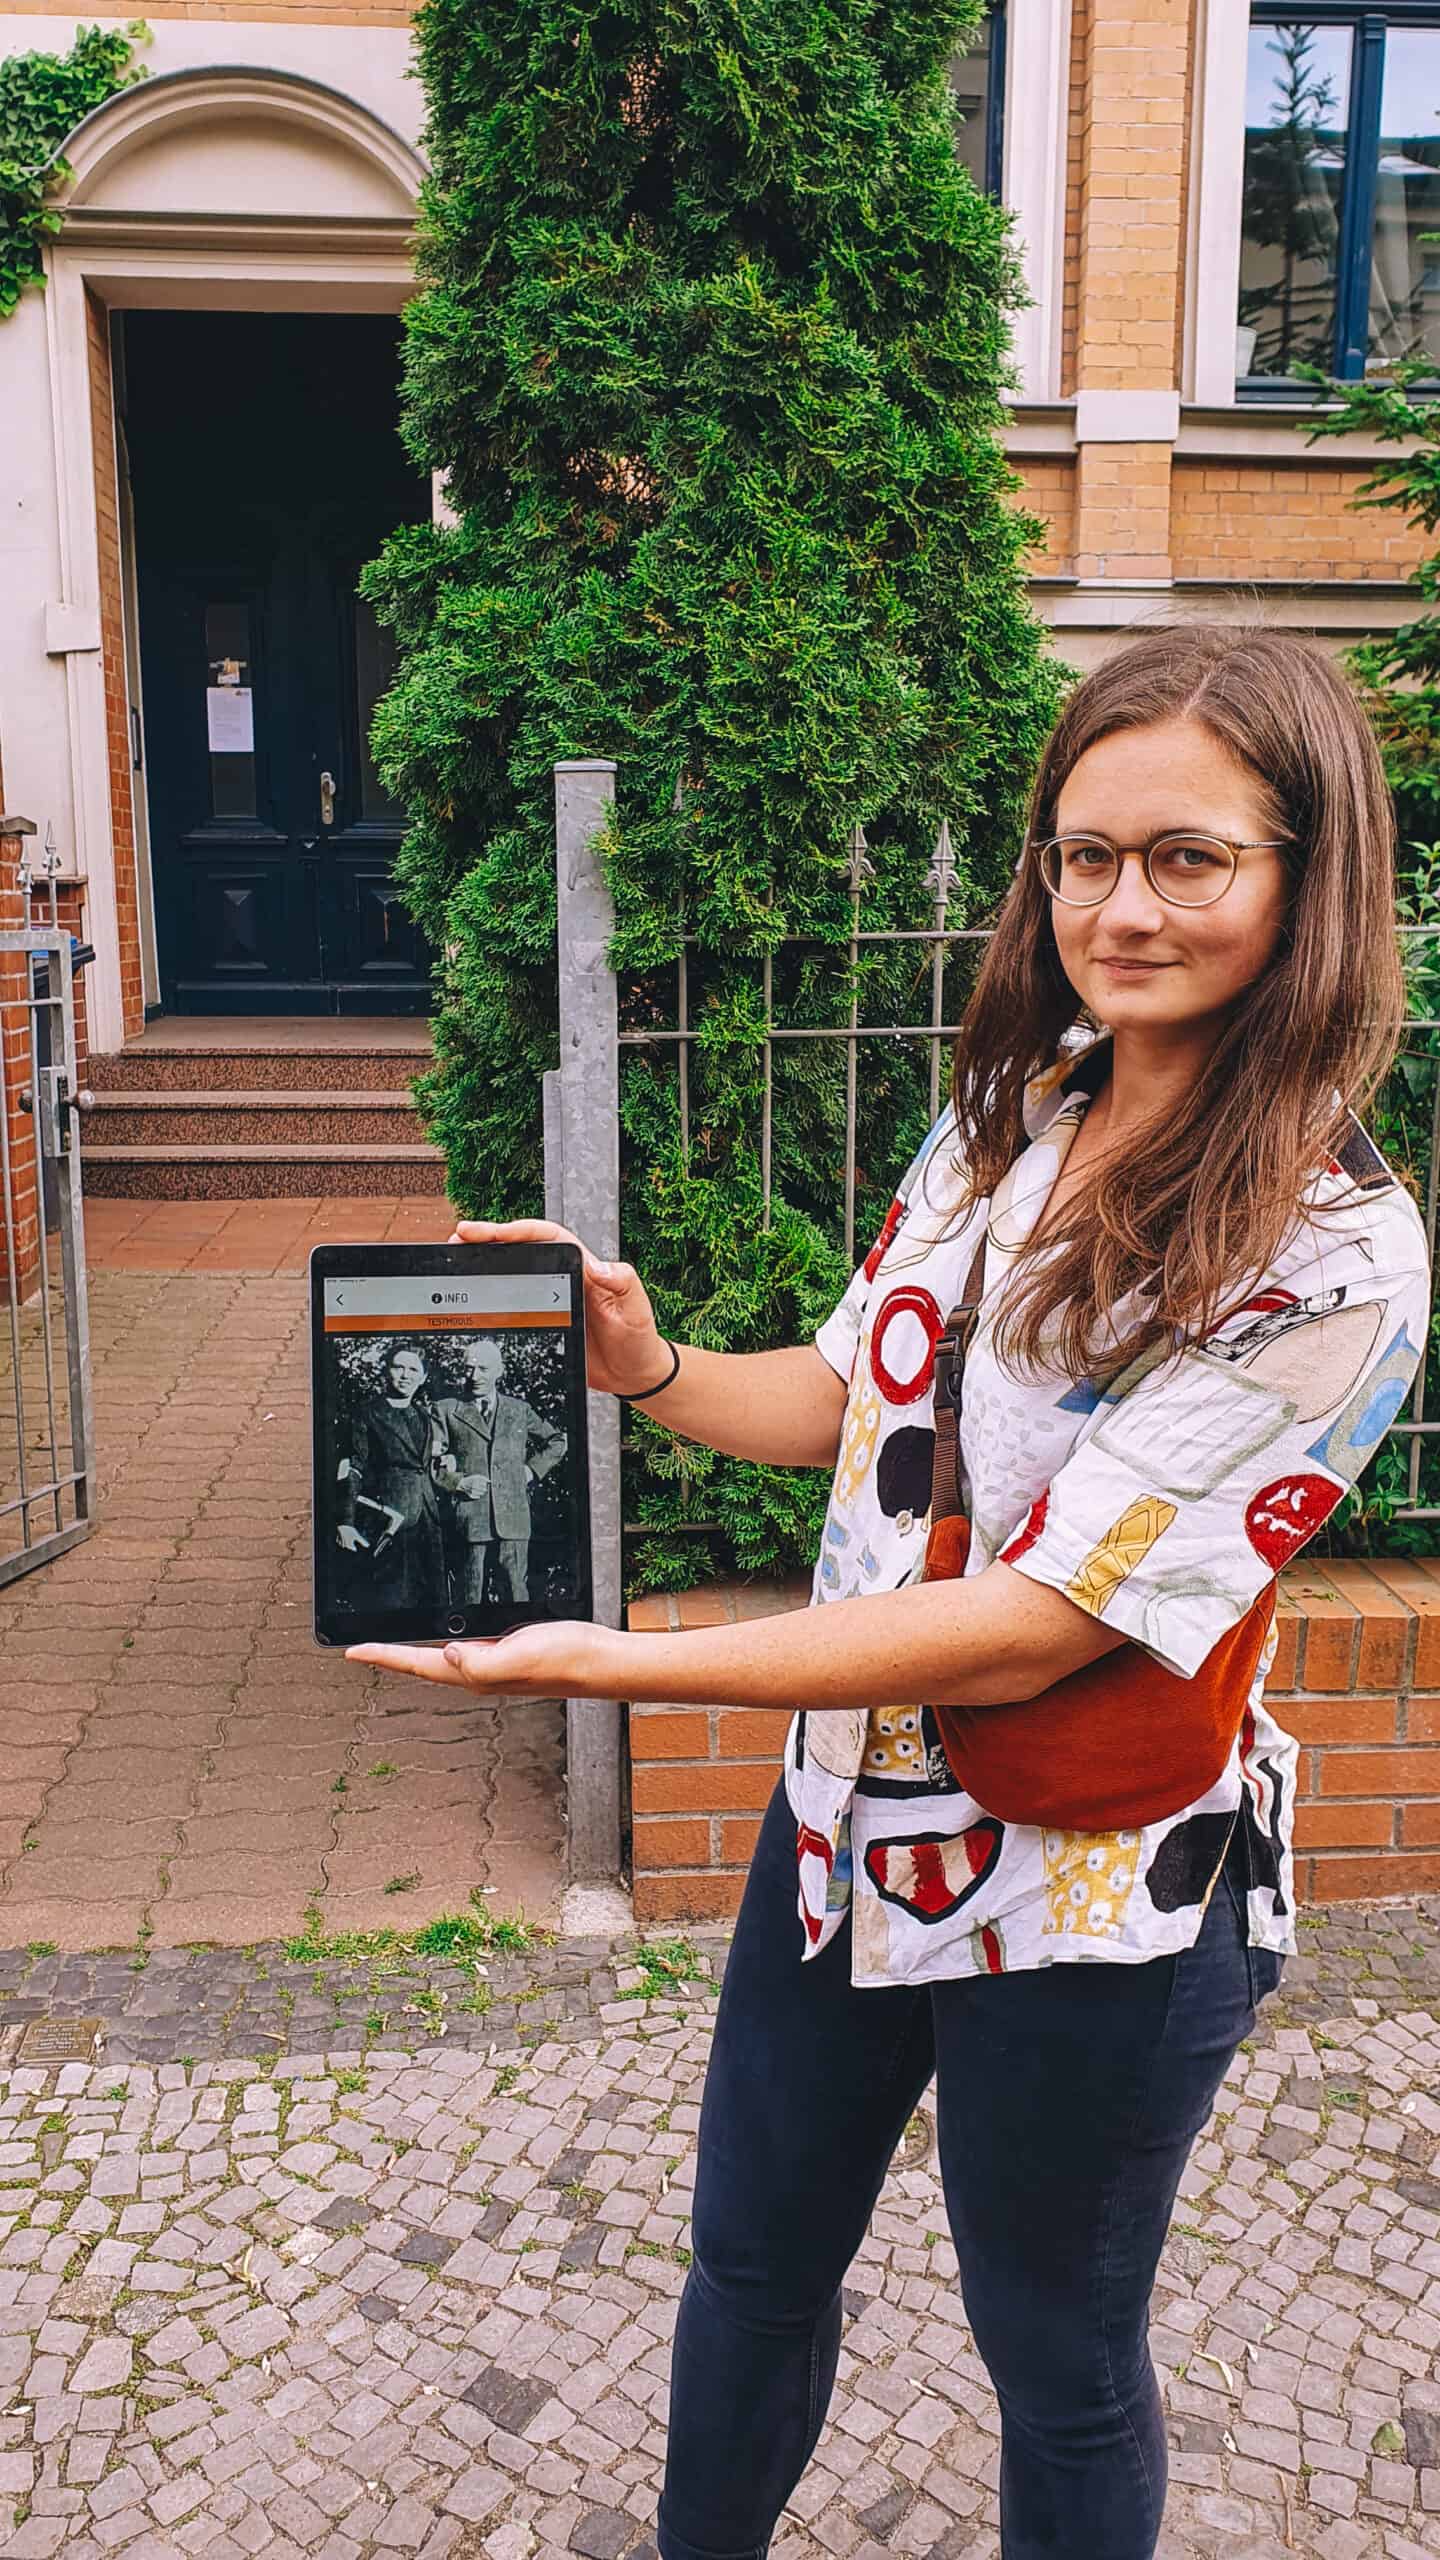 Eine Frau steht vor einem Haus und hält ein Tablet hoch, auf dem ein Bild zu sehen ist